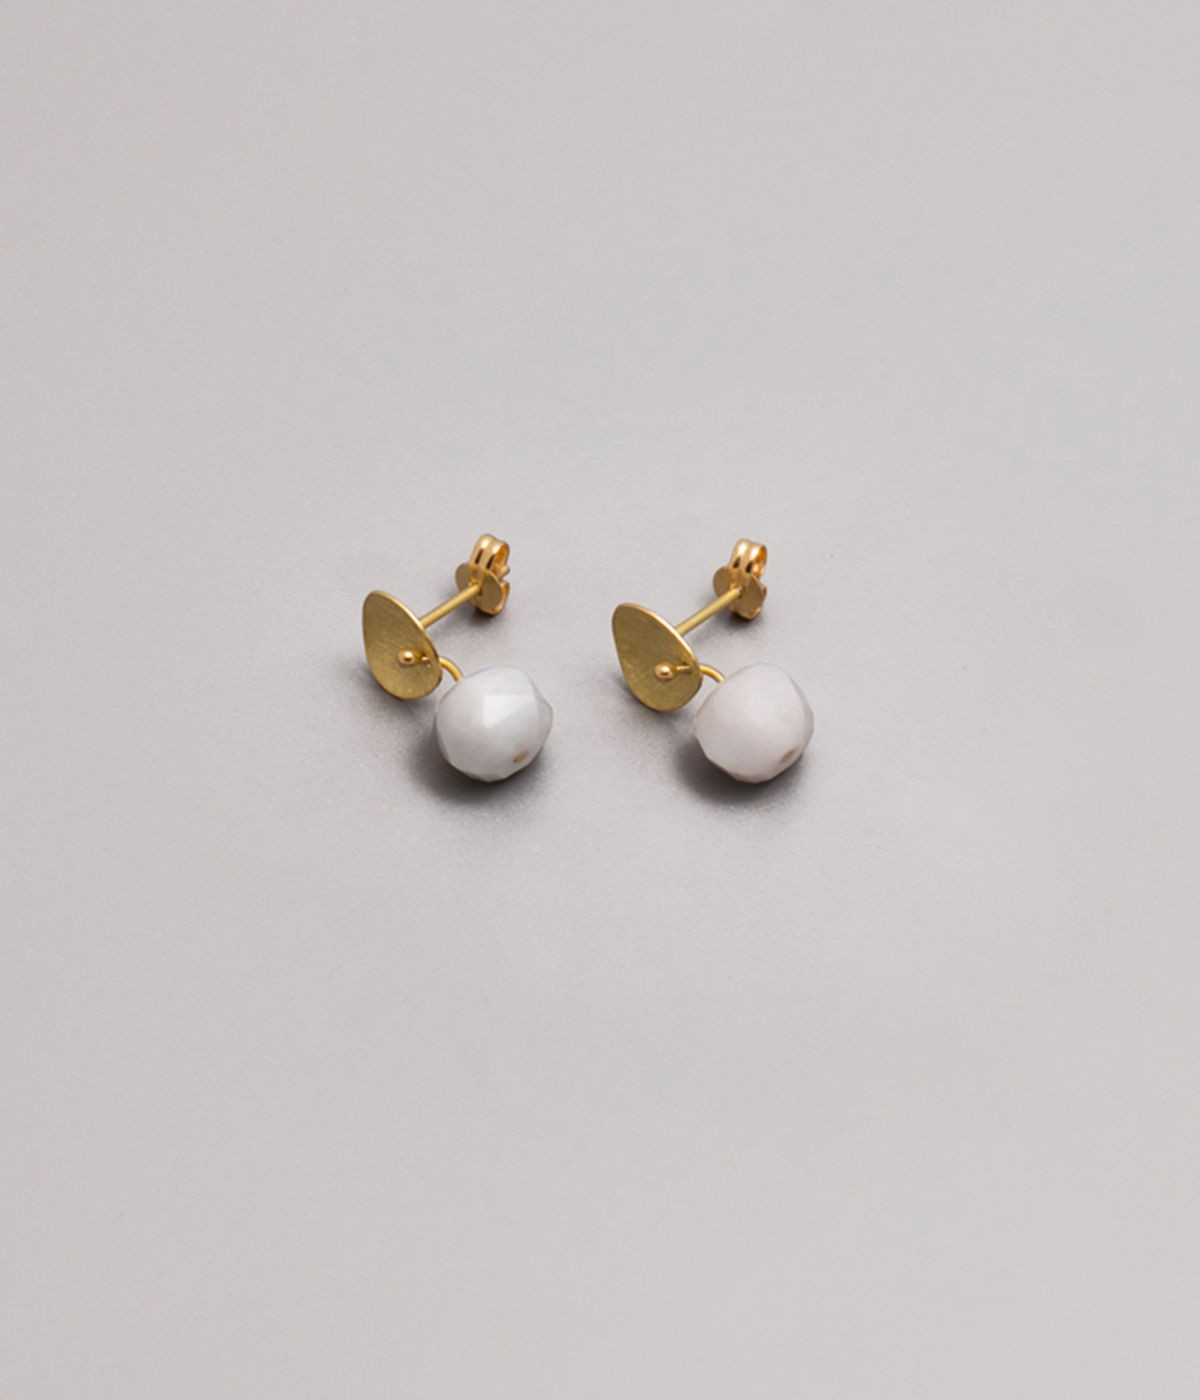 Supple White earrings